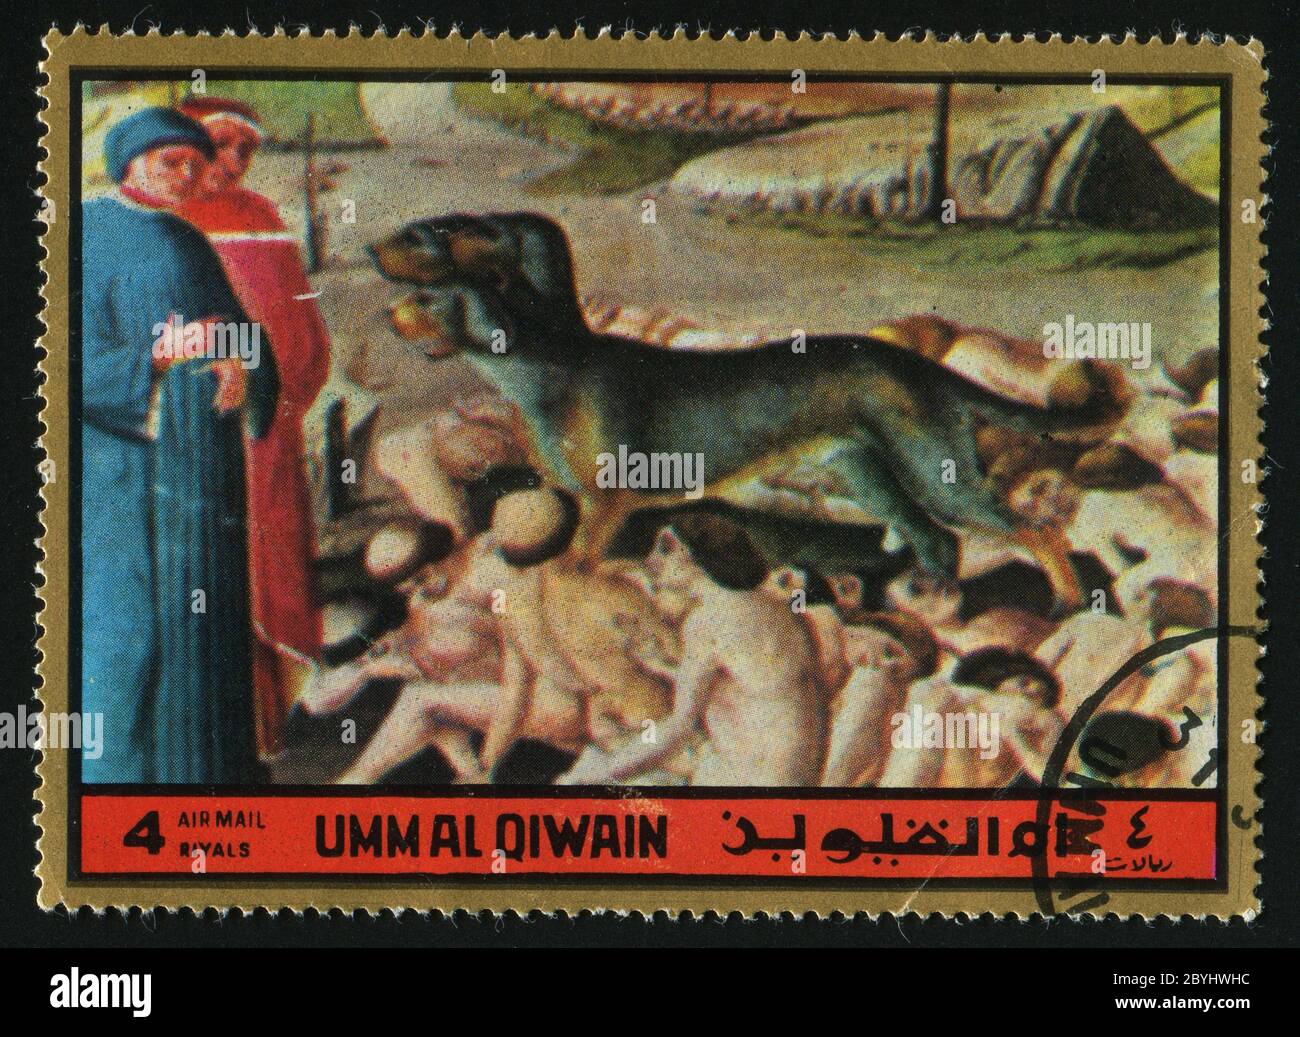 UMM AL QIWAIN - UM 1972: Qualen der Sünder, um 1972. Stockfoto